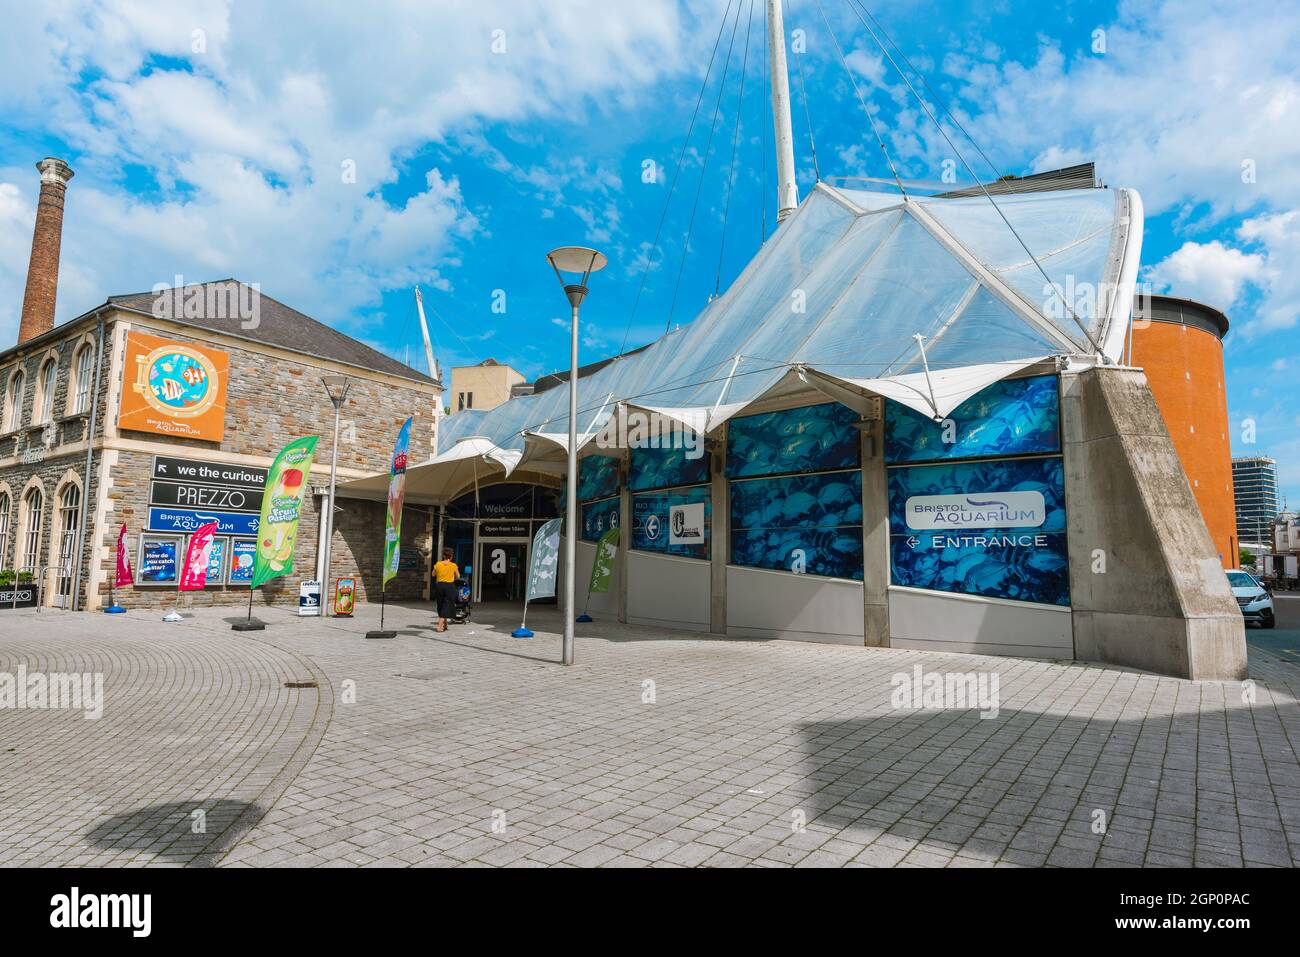 Bristol Aquarium, vista in estate dell'ingresso all'acquario della città in Anchor Square, Bristol, Avon, Regno Unito, Inghilterra Foto Stock